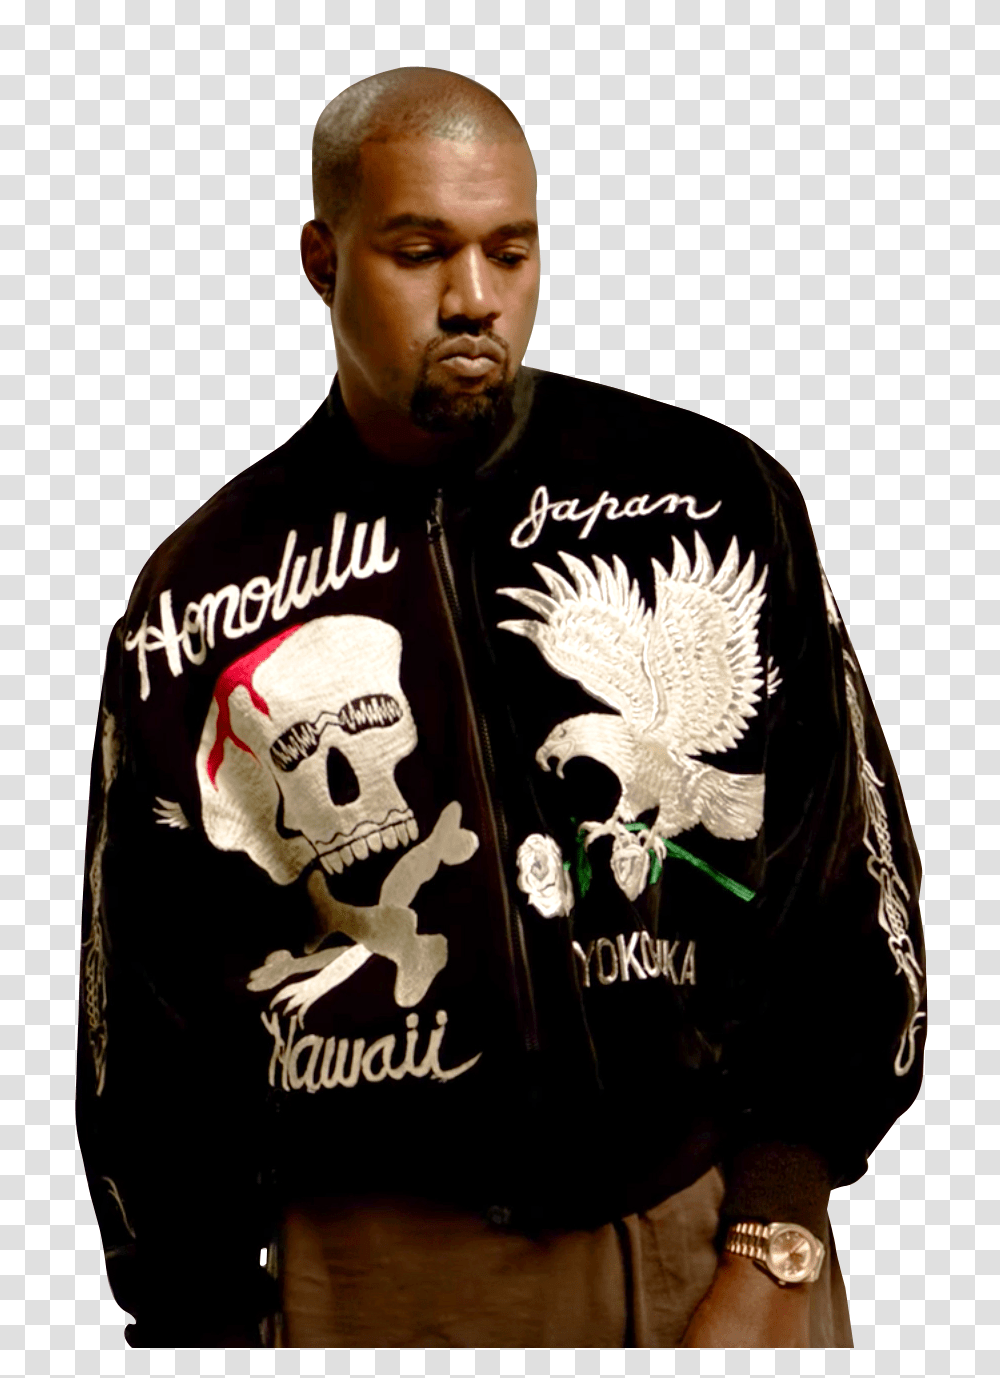 Kanye West Image, Celebrity, Person, Sleeve Transparent Png